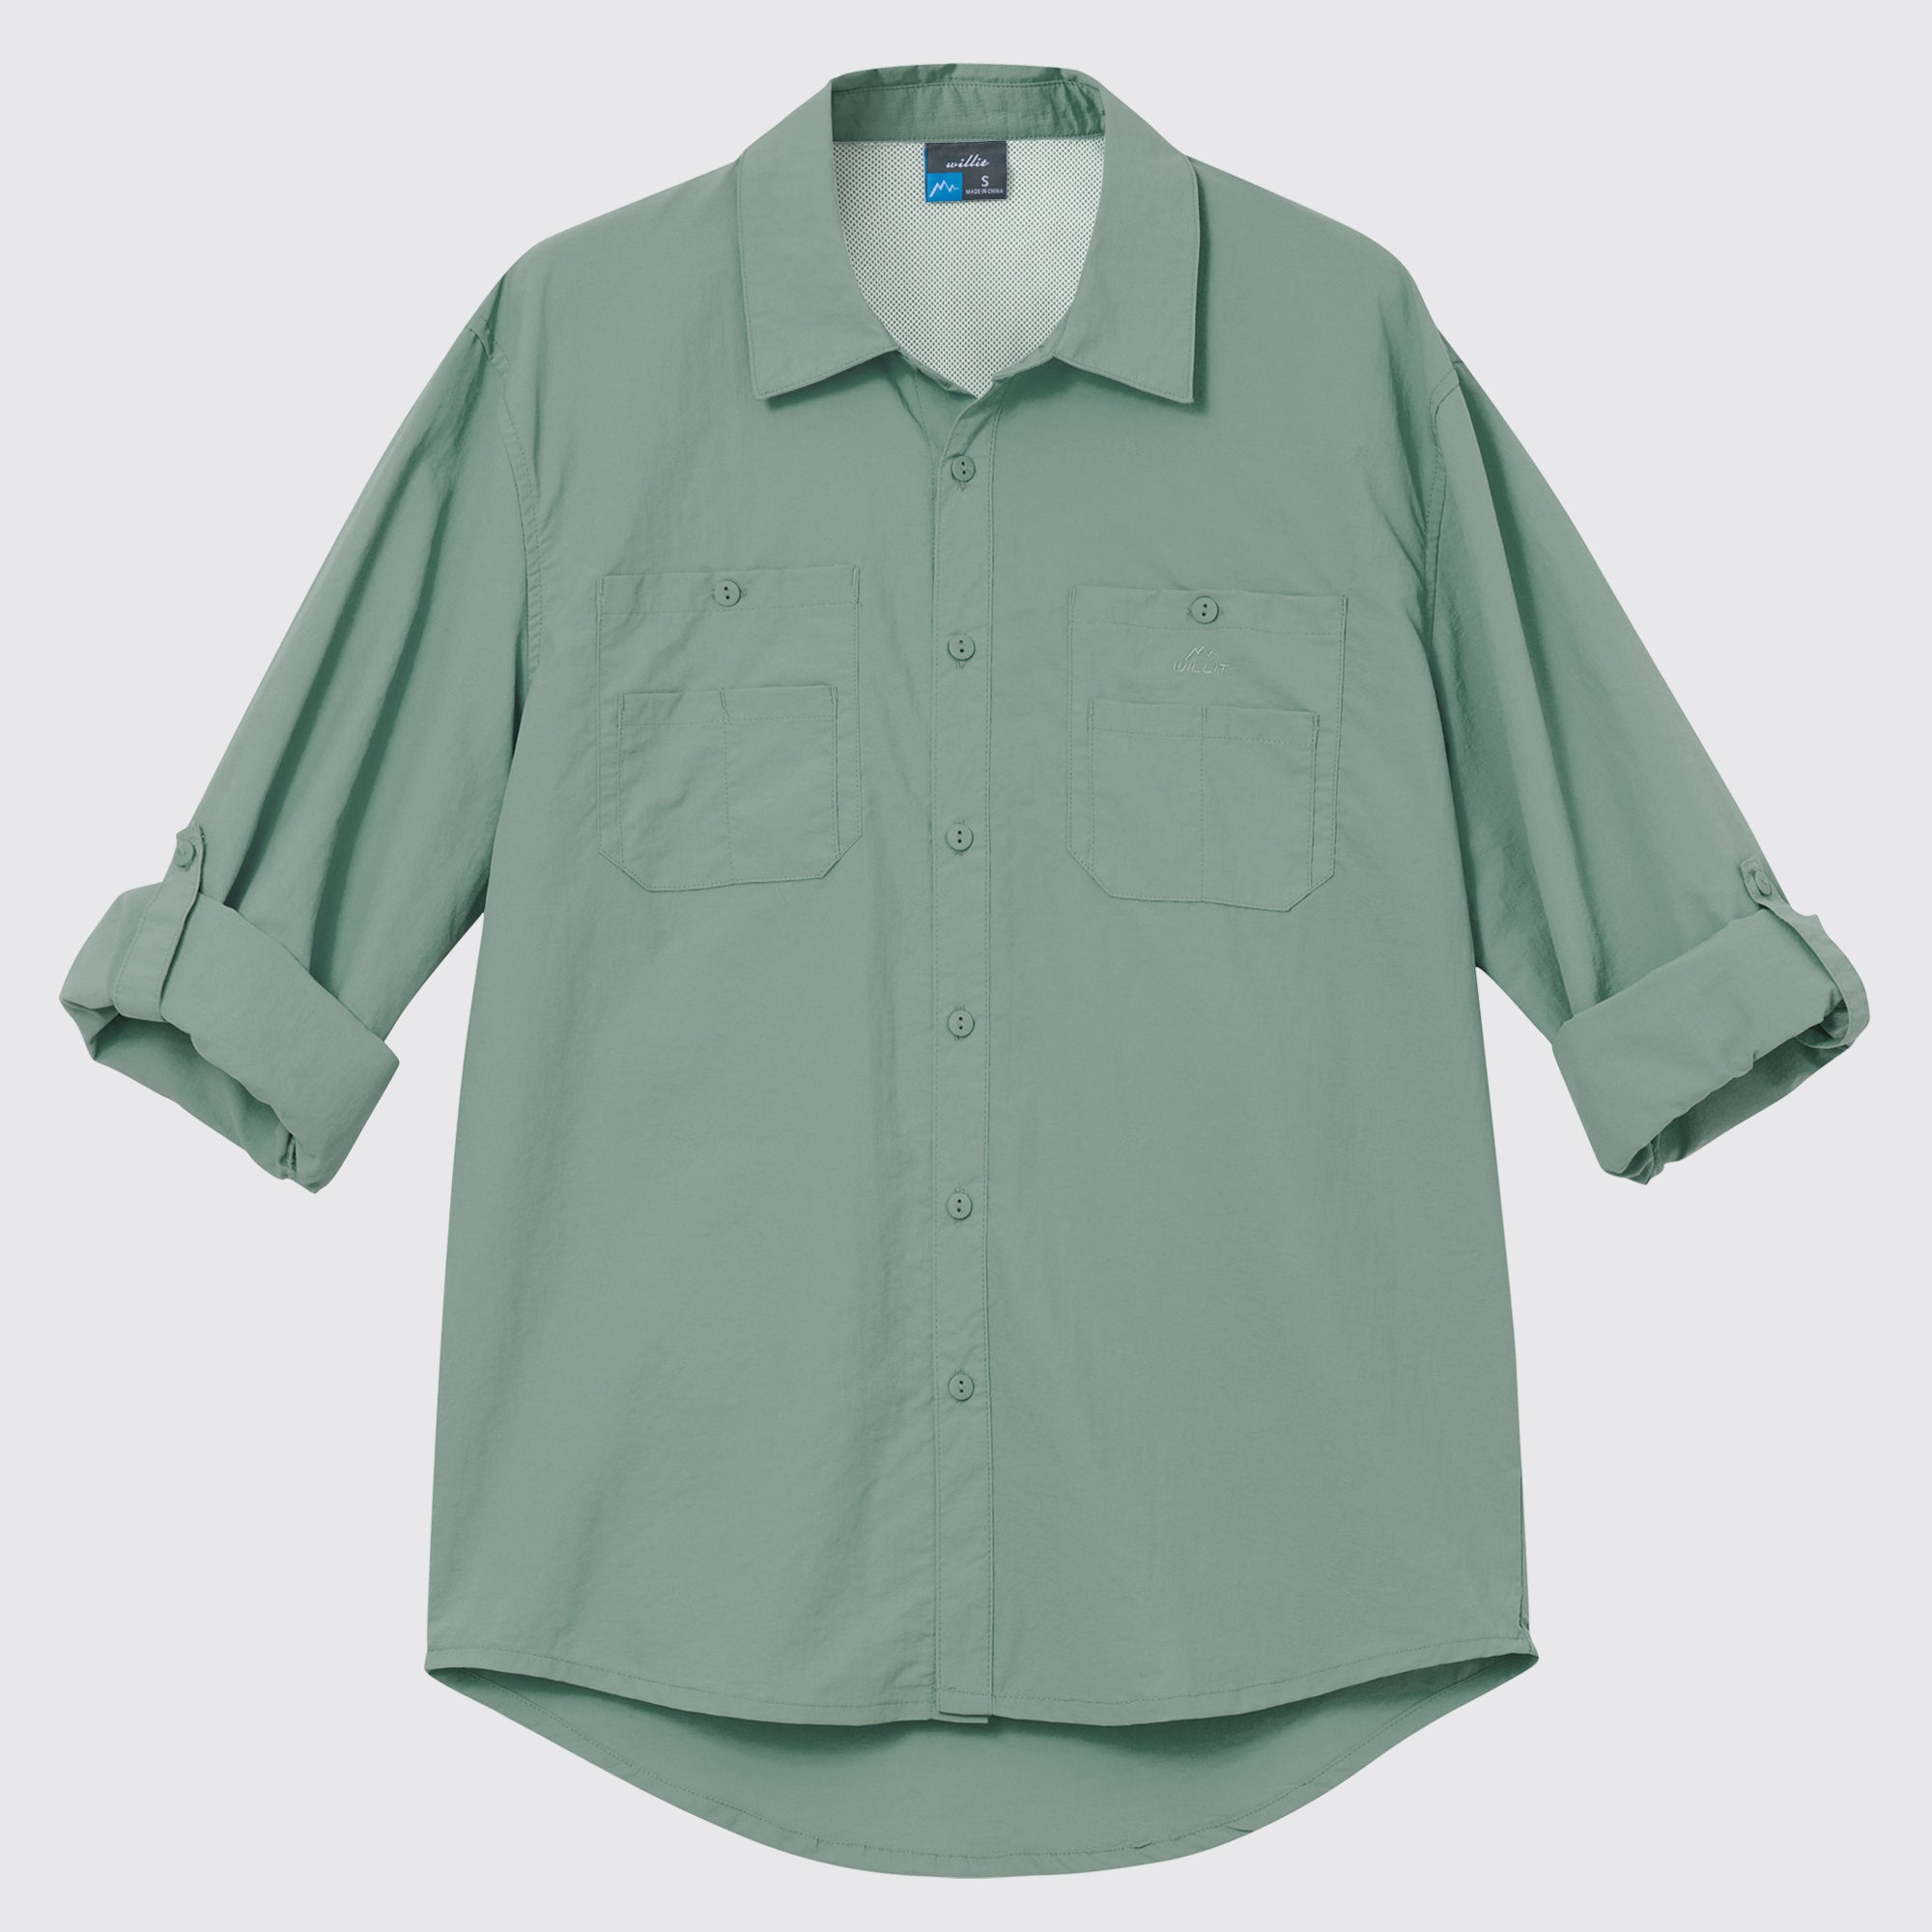 Men's Fishing Shirt Long Sleeve Hiking Shirts_SageGreen3